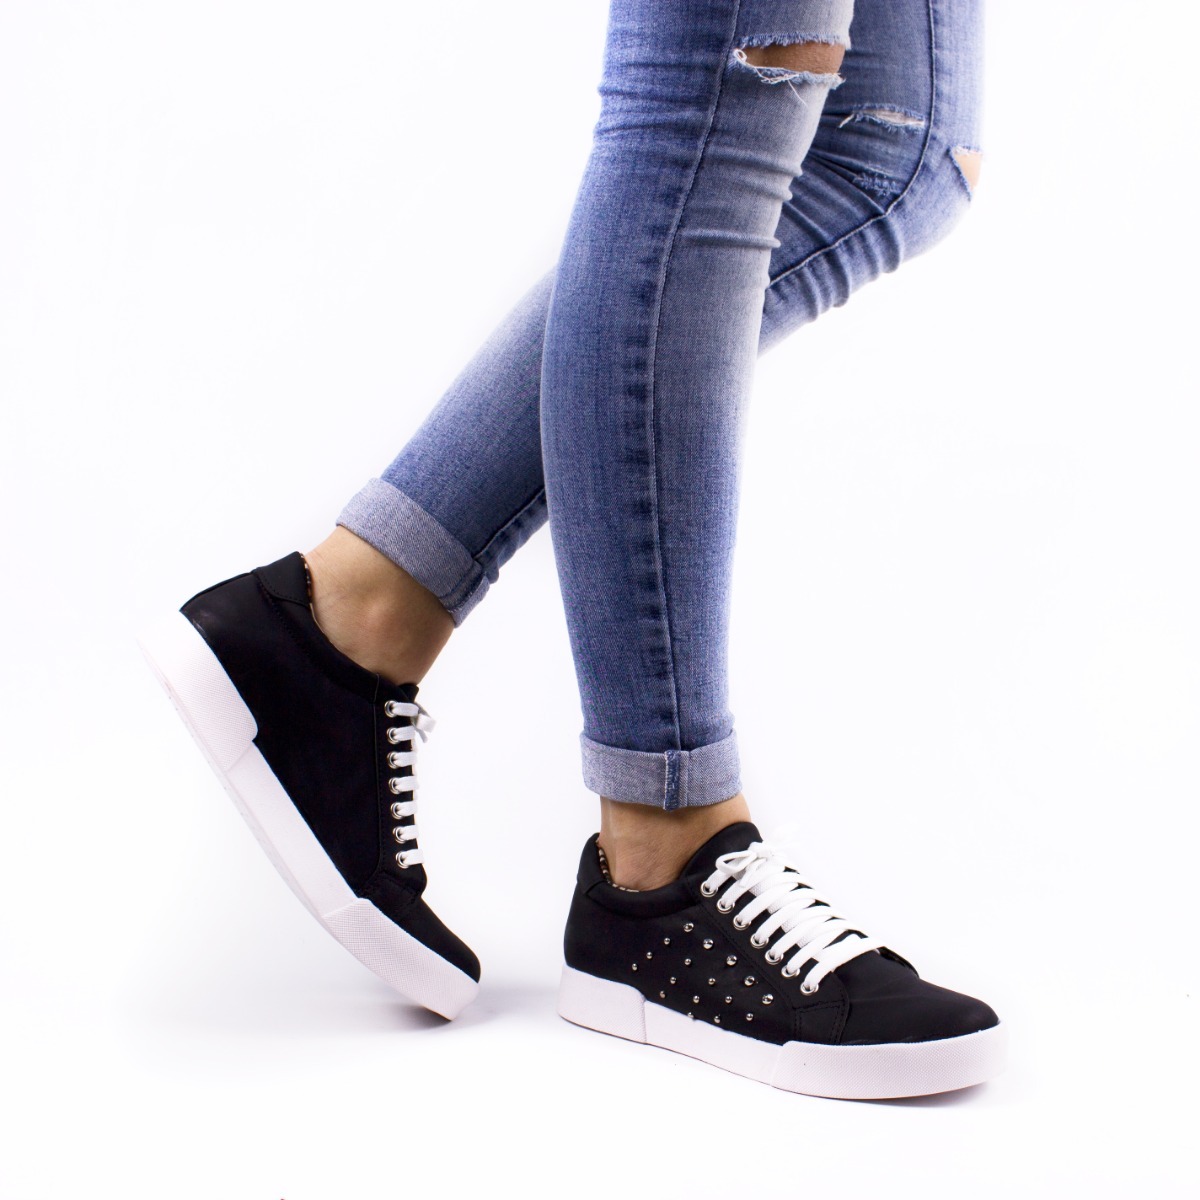 artículo Ordenador portátil Desnatar Zapatillas De Verano Mujer 2019 Shop, 55% OFF | www.lasdeliciasvejer.com